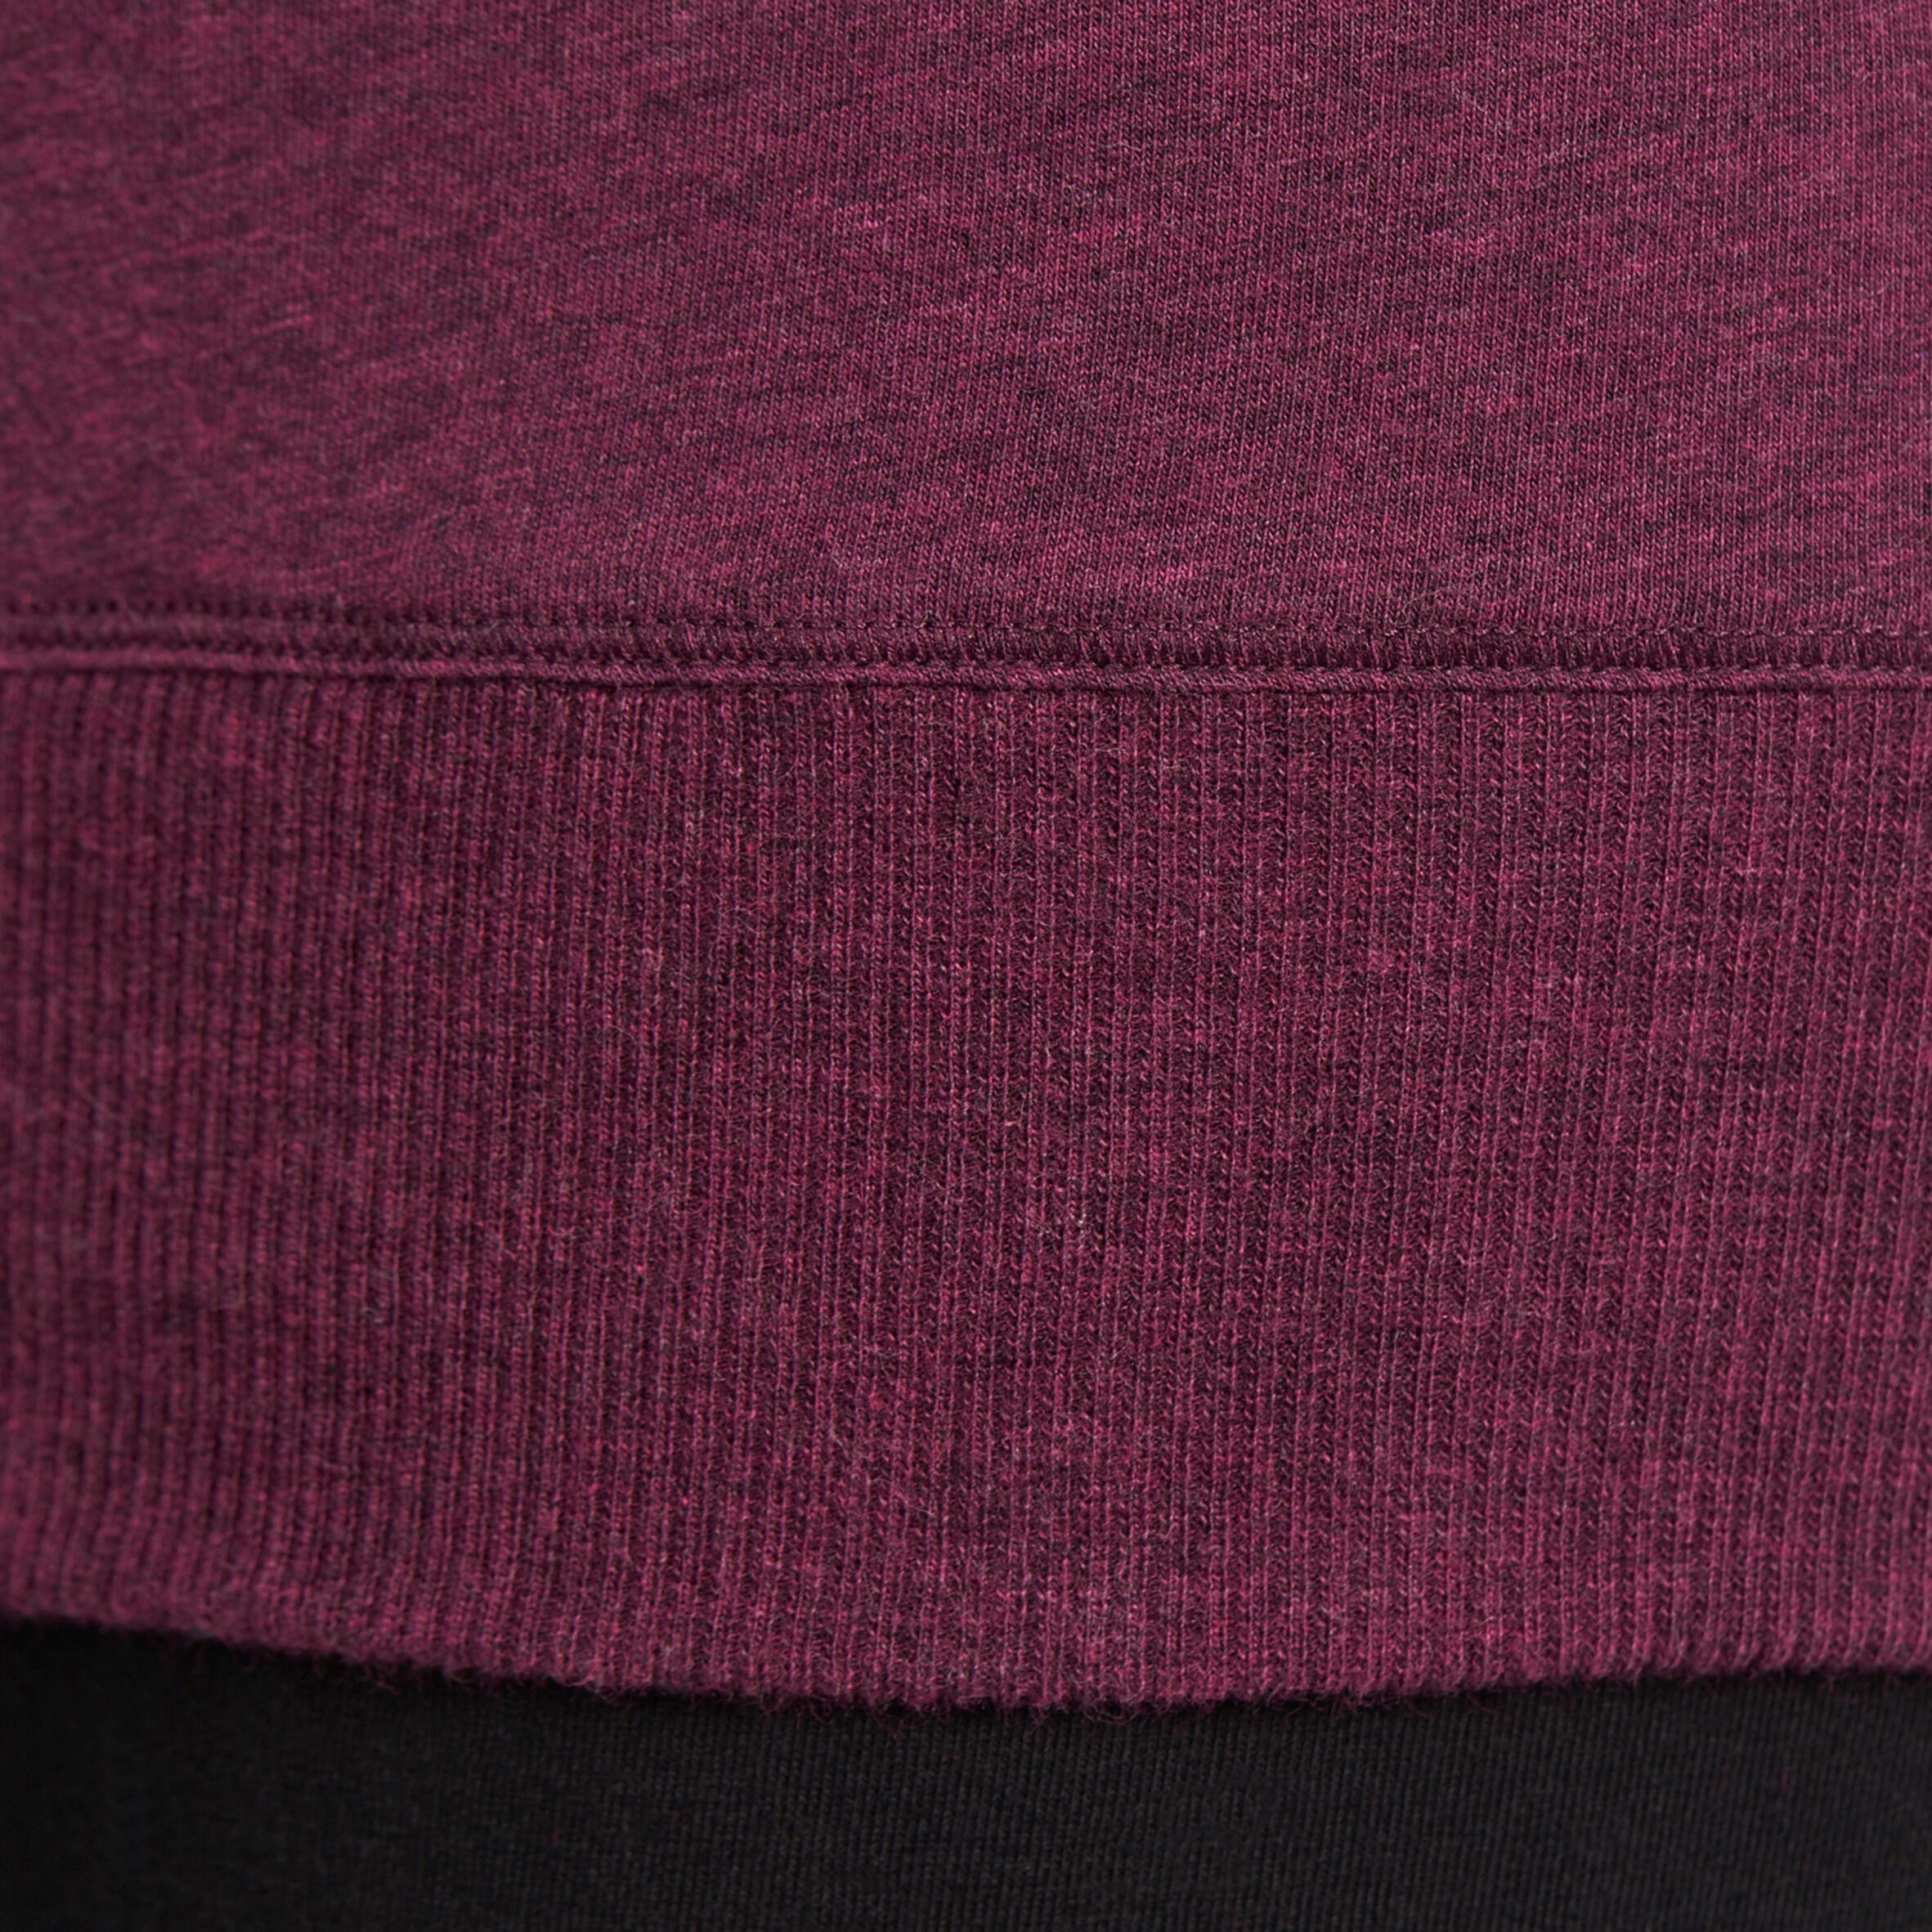 Women's Organic Cotton Long-Sleeved Yoga T-Shirt - Mottled Burgundy 9/12